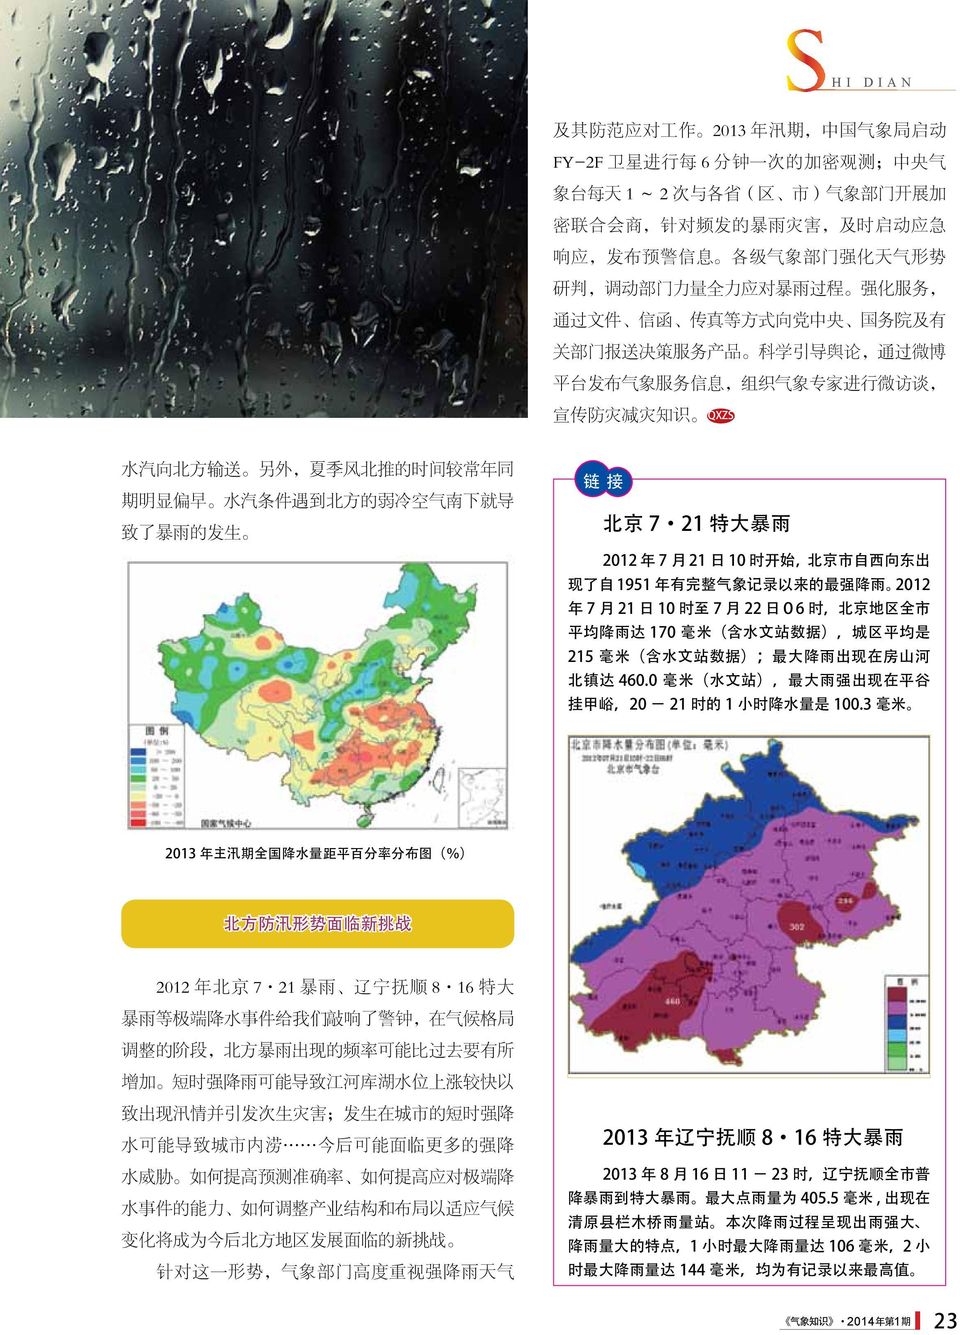 减 灾 知 识 QXZS 水 汽 向 北 方 输 送 另 外, 夏 季 风 北 推 的 时 间 较 常 年 同 期 明 显 偏 早 水 汽 条 件 遇 到 北 方 的 弱 冷 空 气 南 下 就 导 致 了 暴 雨 的 发 生 链 接 北 京 7 21 特 大 暴 雨 2012 年 7 月 21 日 10 时 开 始, 北 京 市 自 西 向 东 出 现 了 自 1951 年 有 完 整 气 象